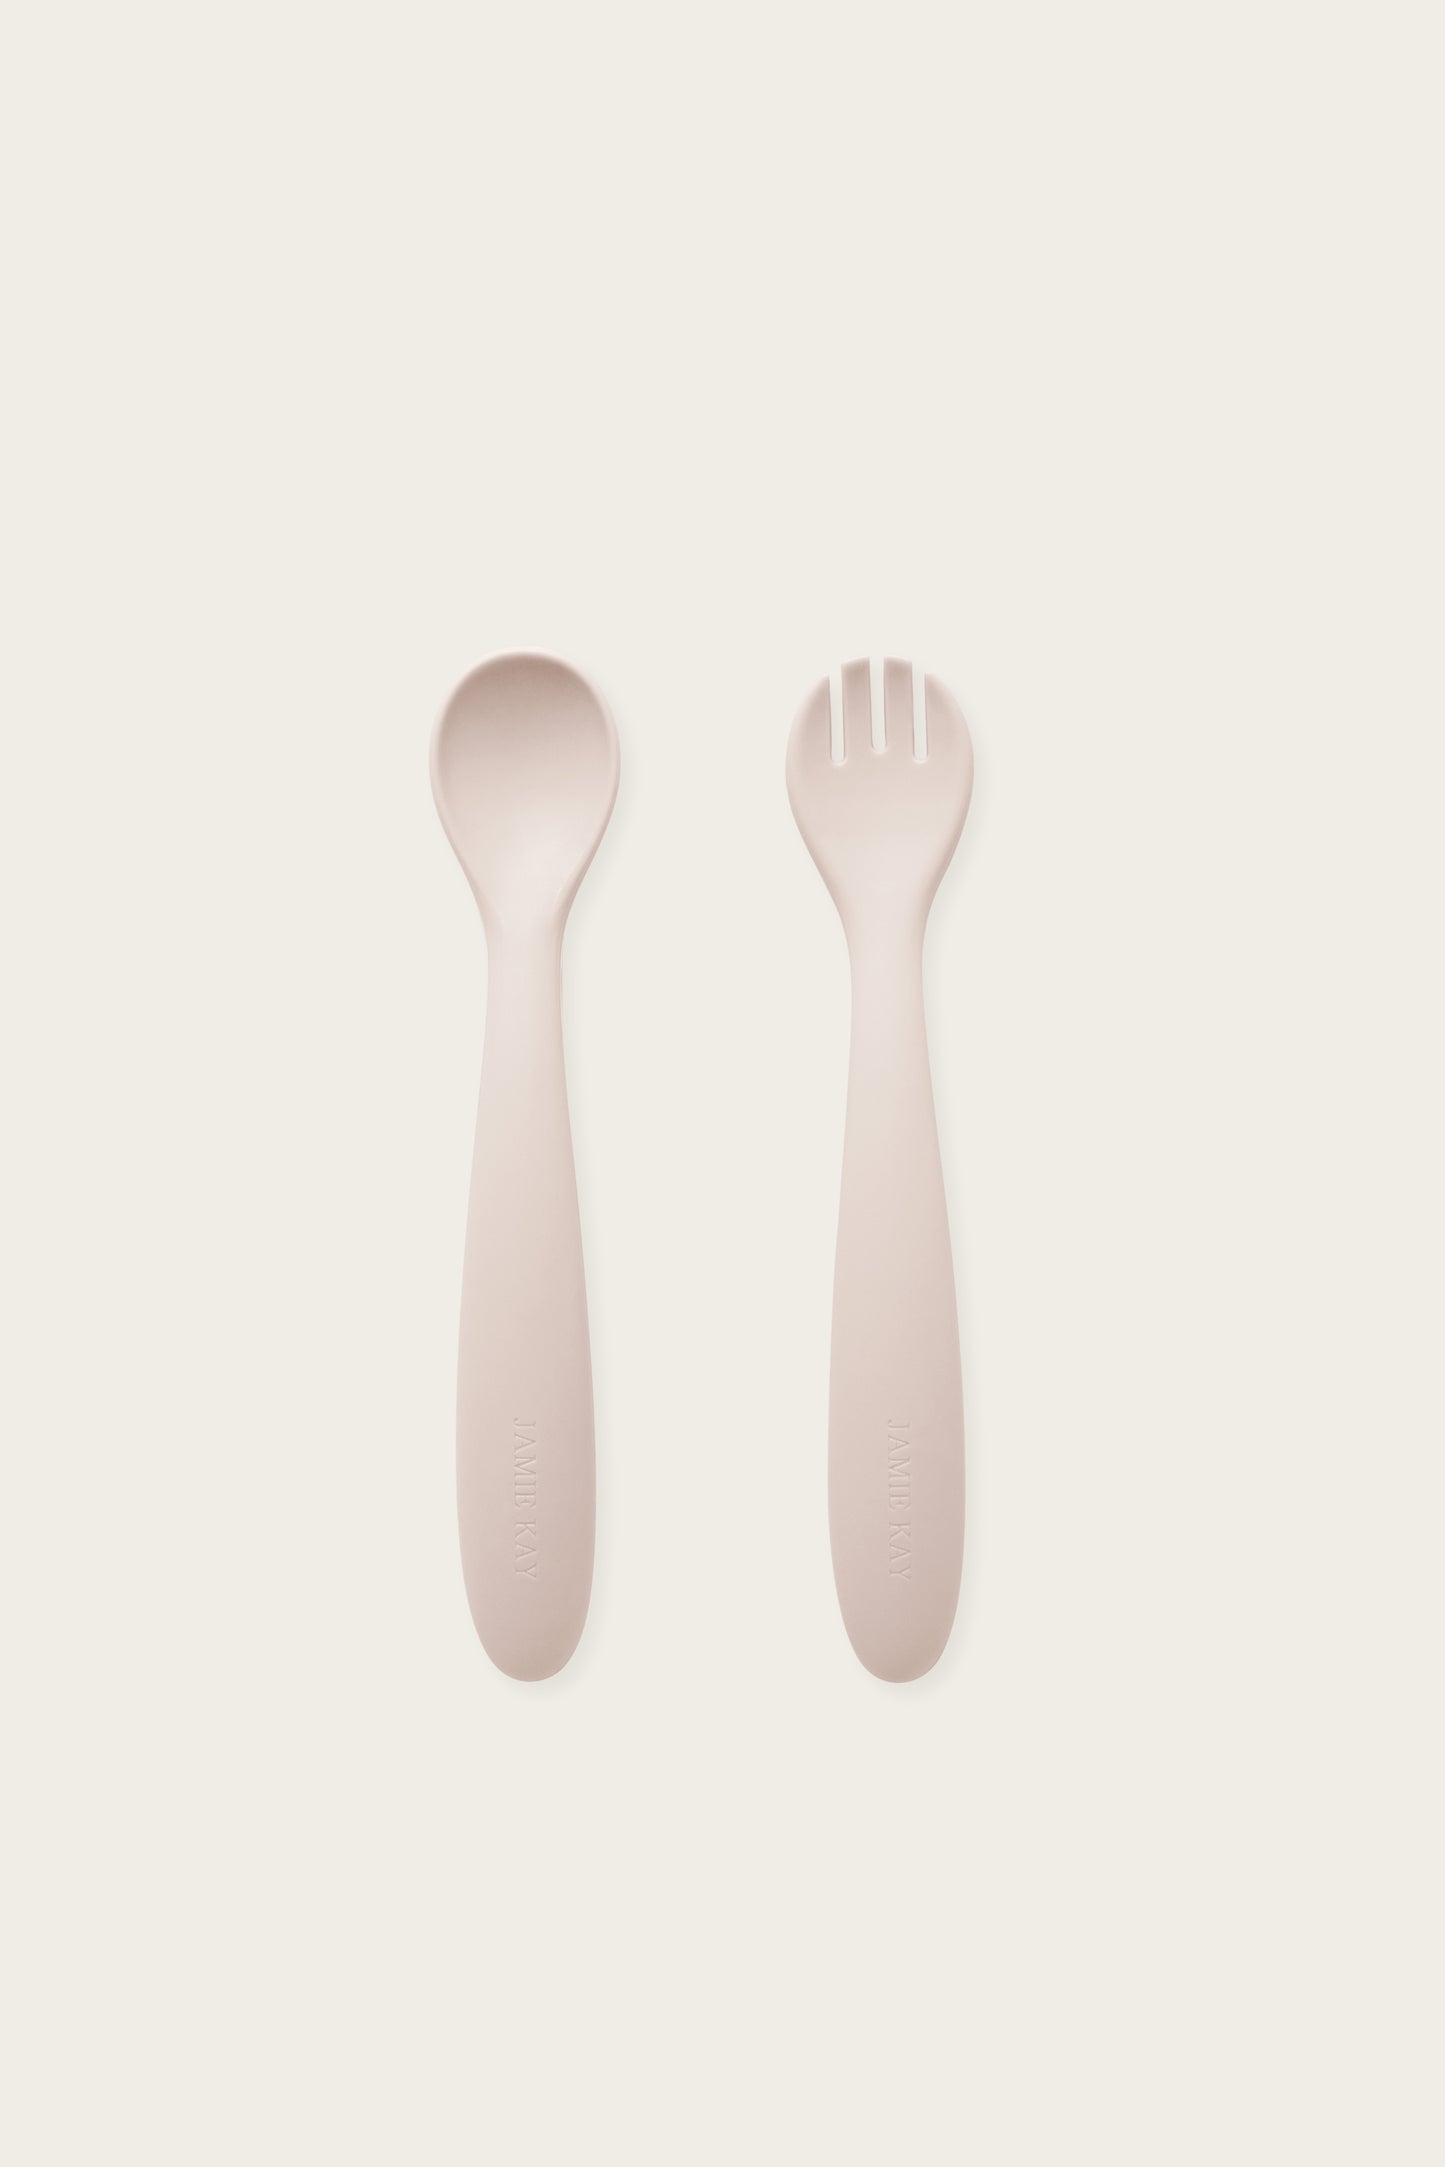 Jamie Kay - Spoon & Fork Set